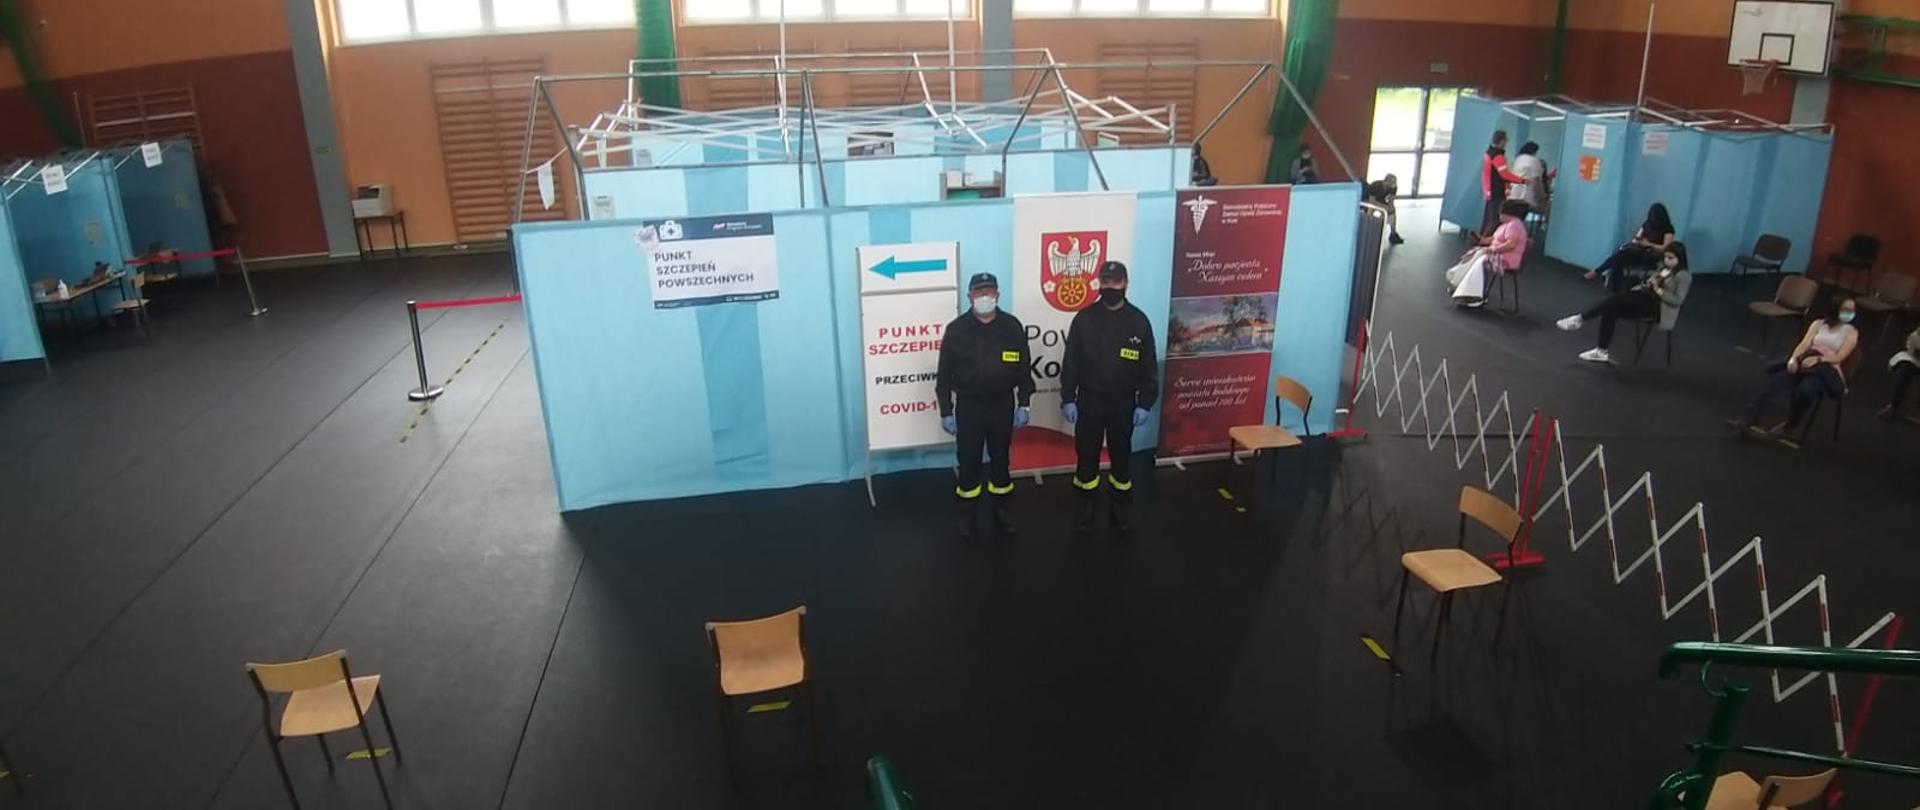 Zdjęcie przedstawia dwóch umundurowanych strażaków pomagających przy szczepieniach. Strażacy stoją na tle parawanów znajdujących się na terenie hali.